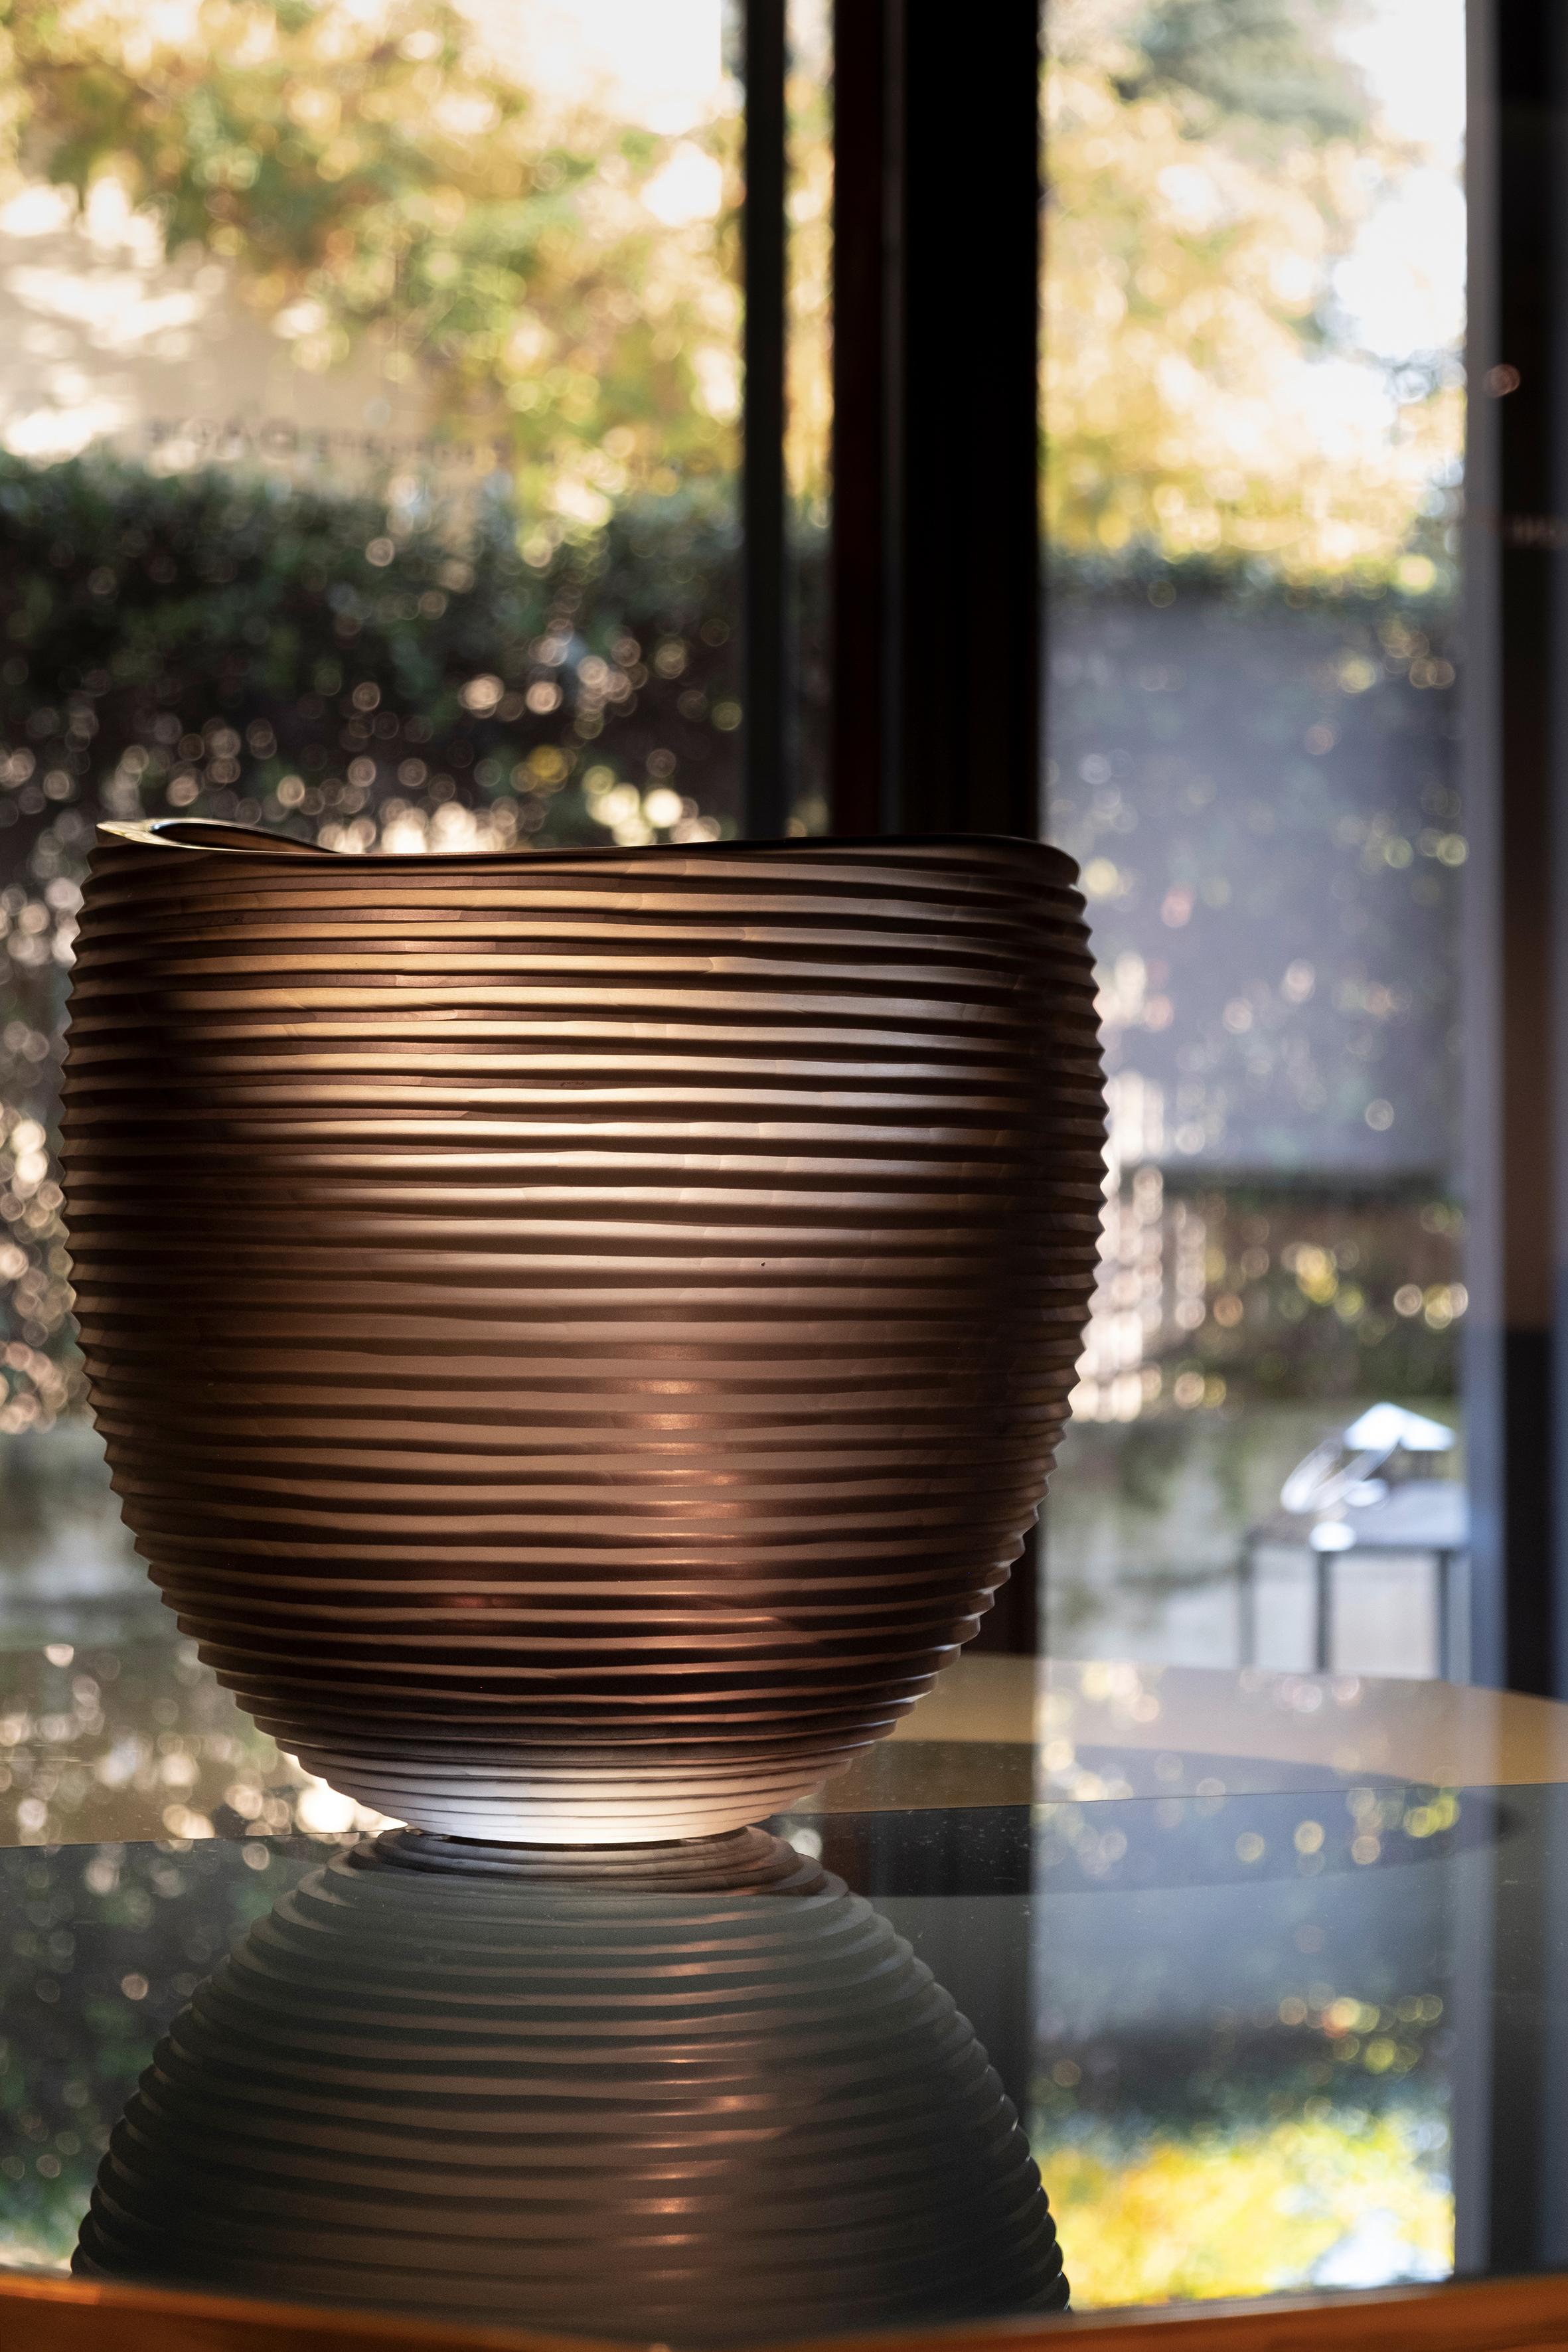 Grand vase Linae, verre de Murano, par Federico Peri, 21e siècle.
Les vases Linae - des pots circulaires au bord émoussé réalisés en verre de Murano de couleur unie et soufflé épais - sont disponibles en trois formes différentes et différentes